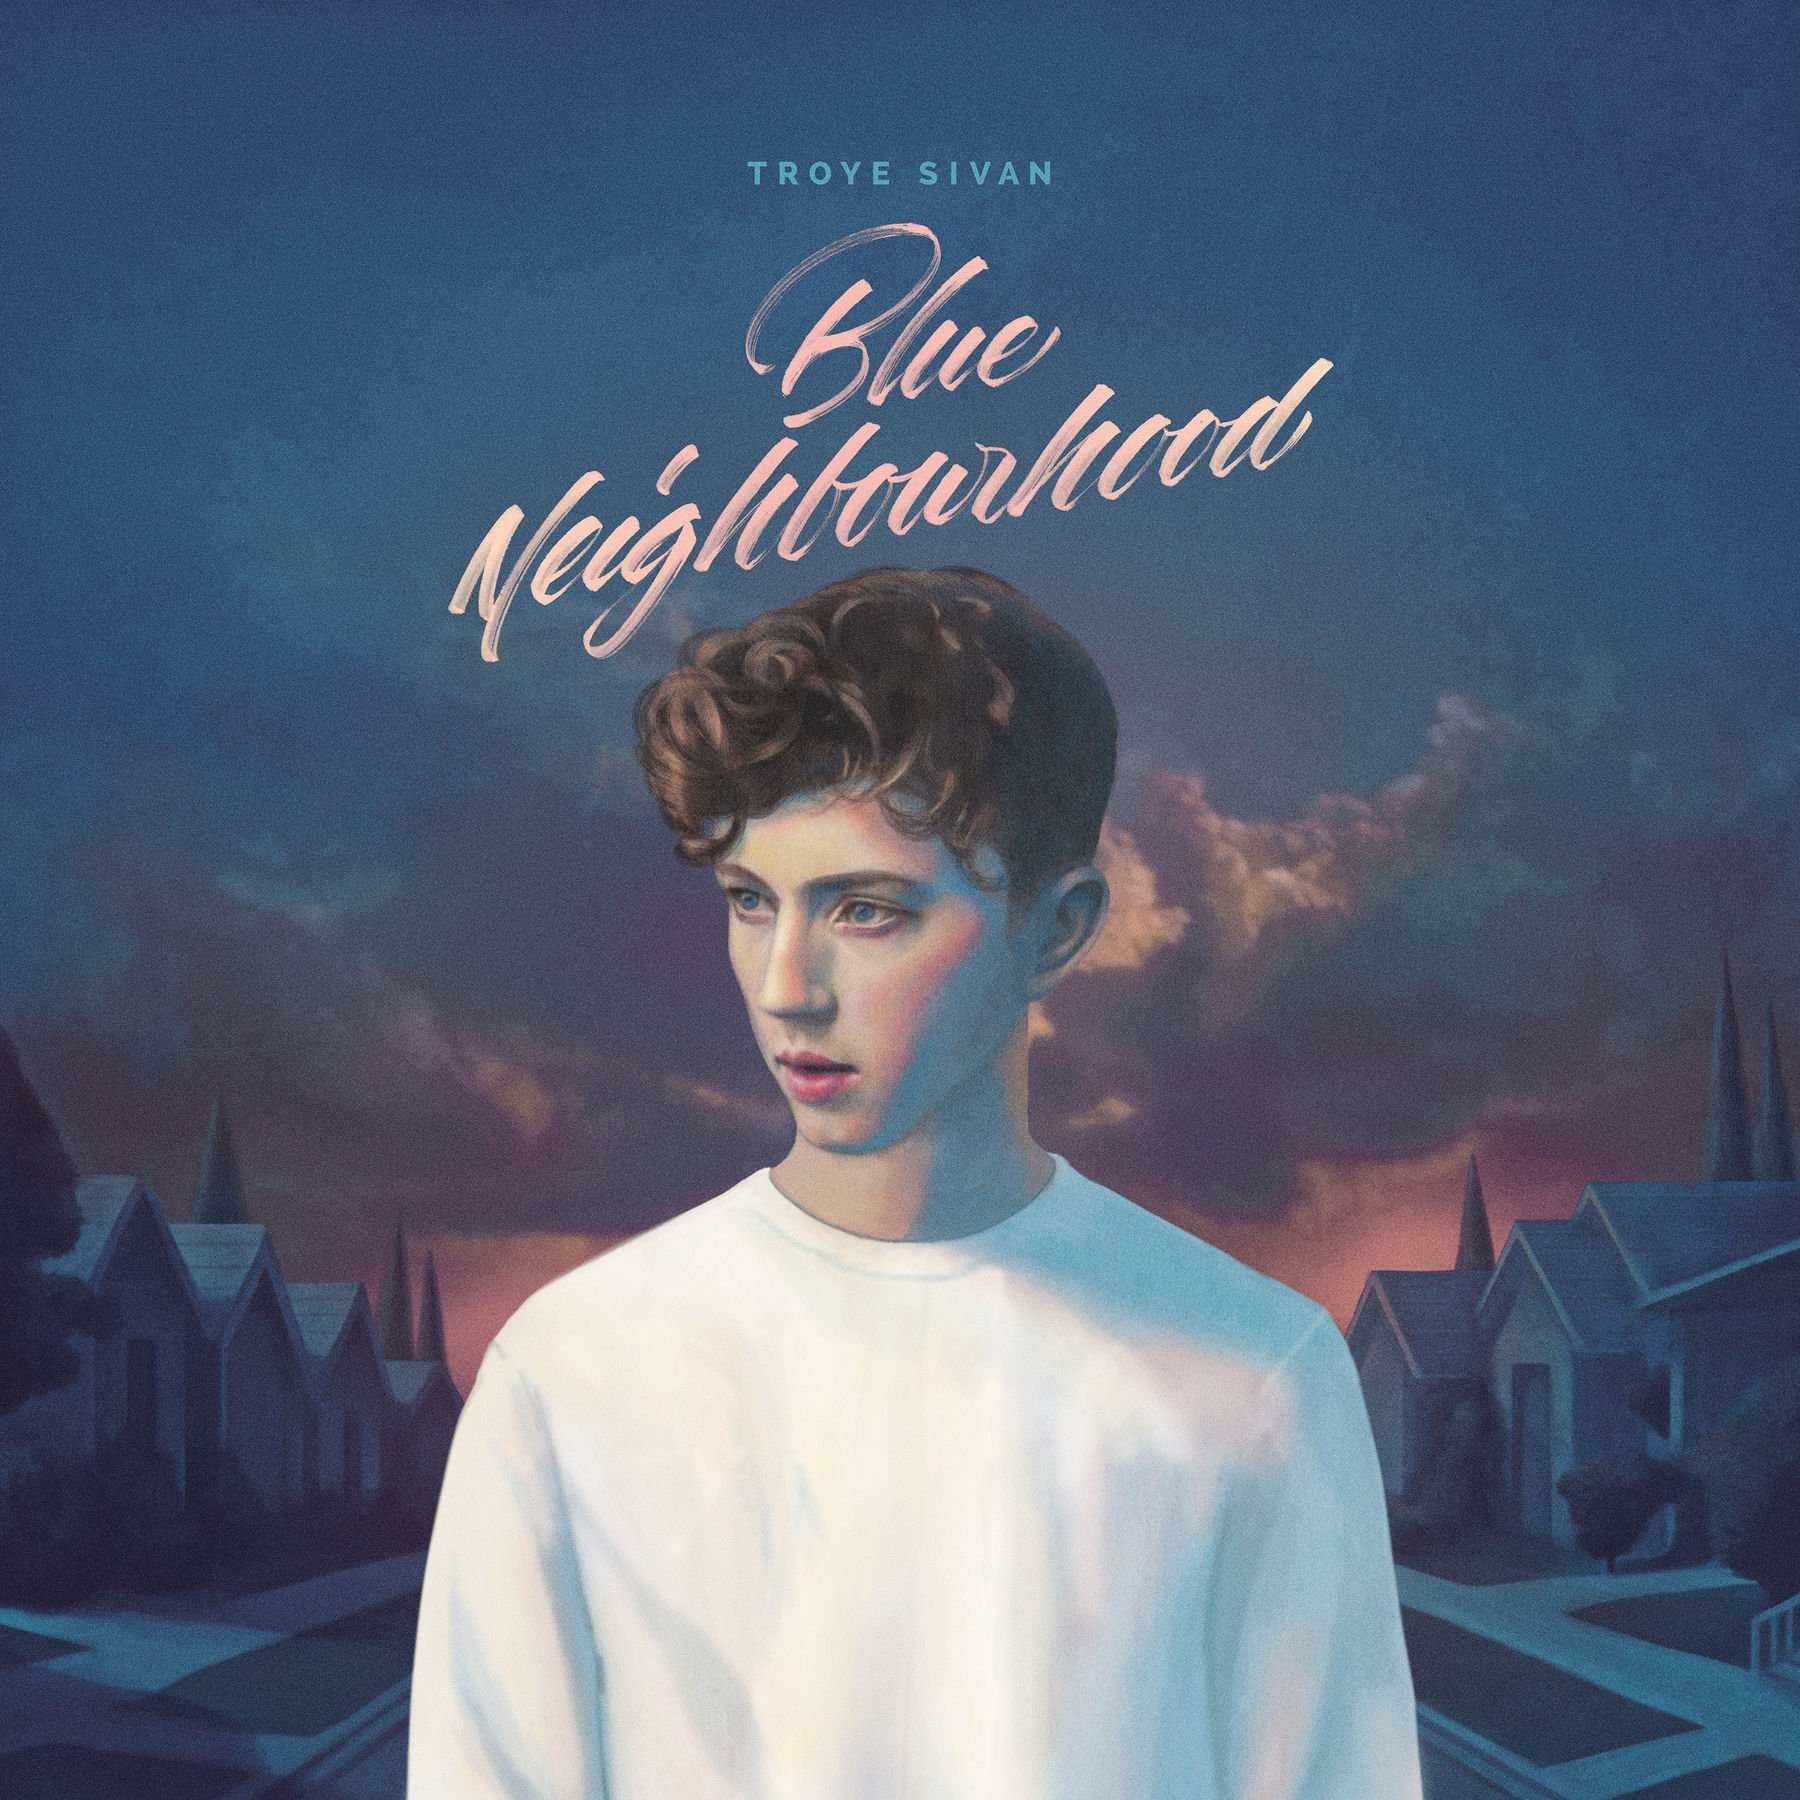 Troye Sivan - Blue Neighbourhood (Deluxe) Artwork (2 Of 3) | Last.Fm